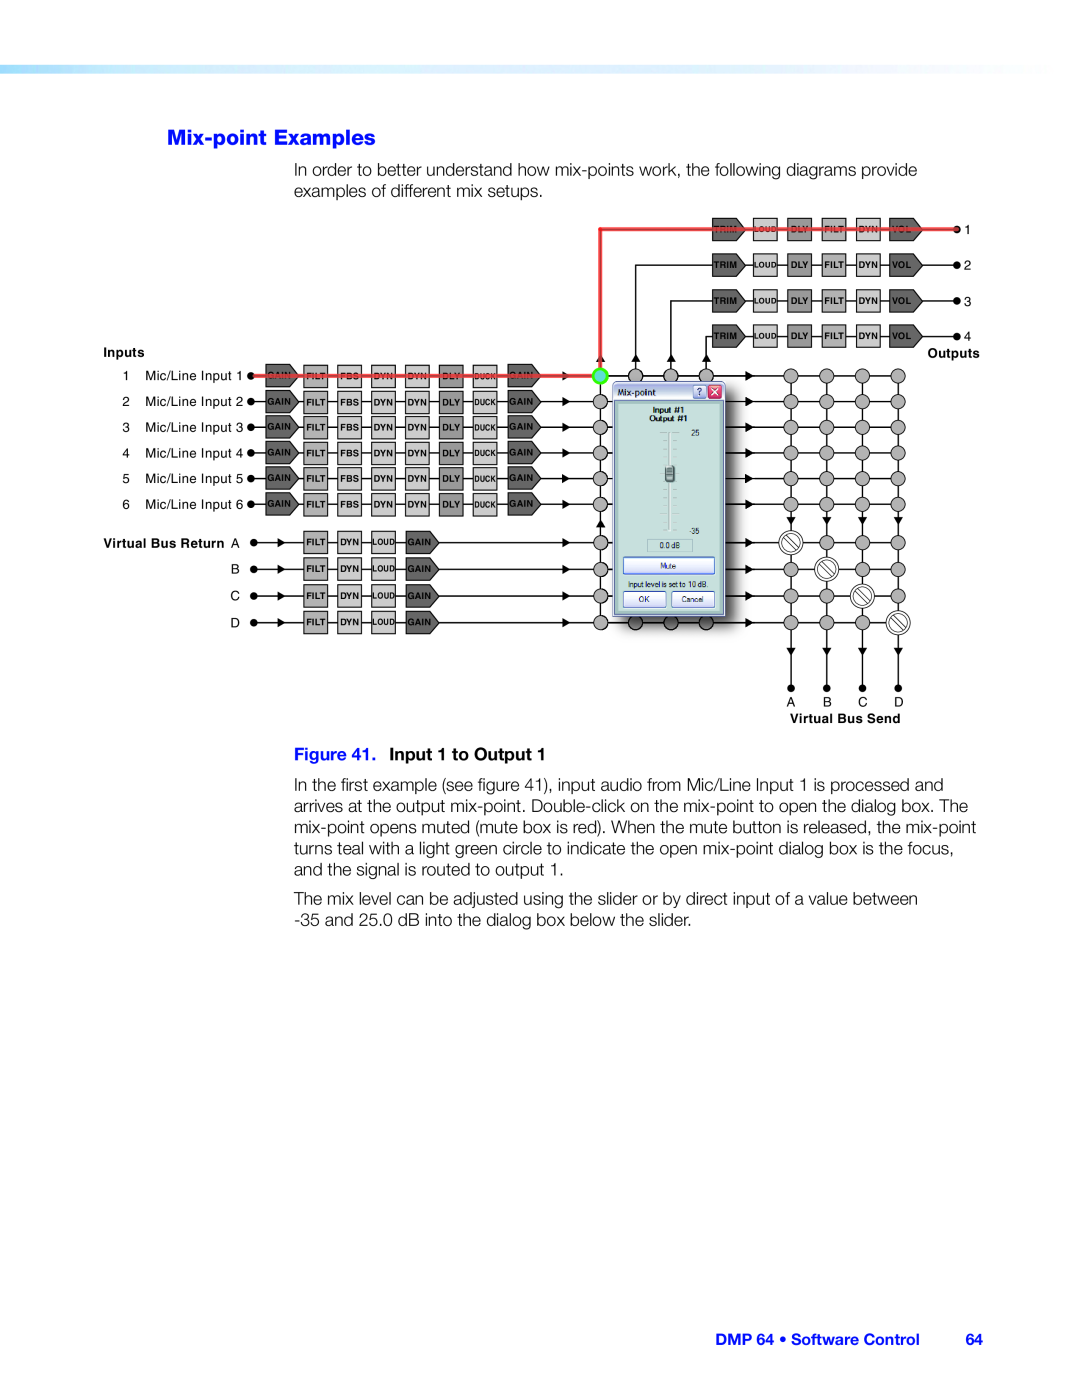 Extron electronic DMP 64 manual Mix-pointExamples, Input 1 to Output 